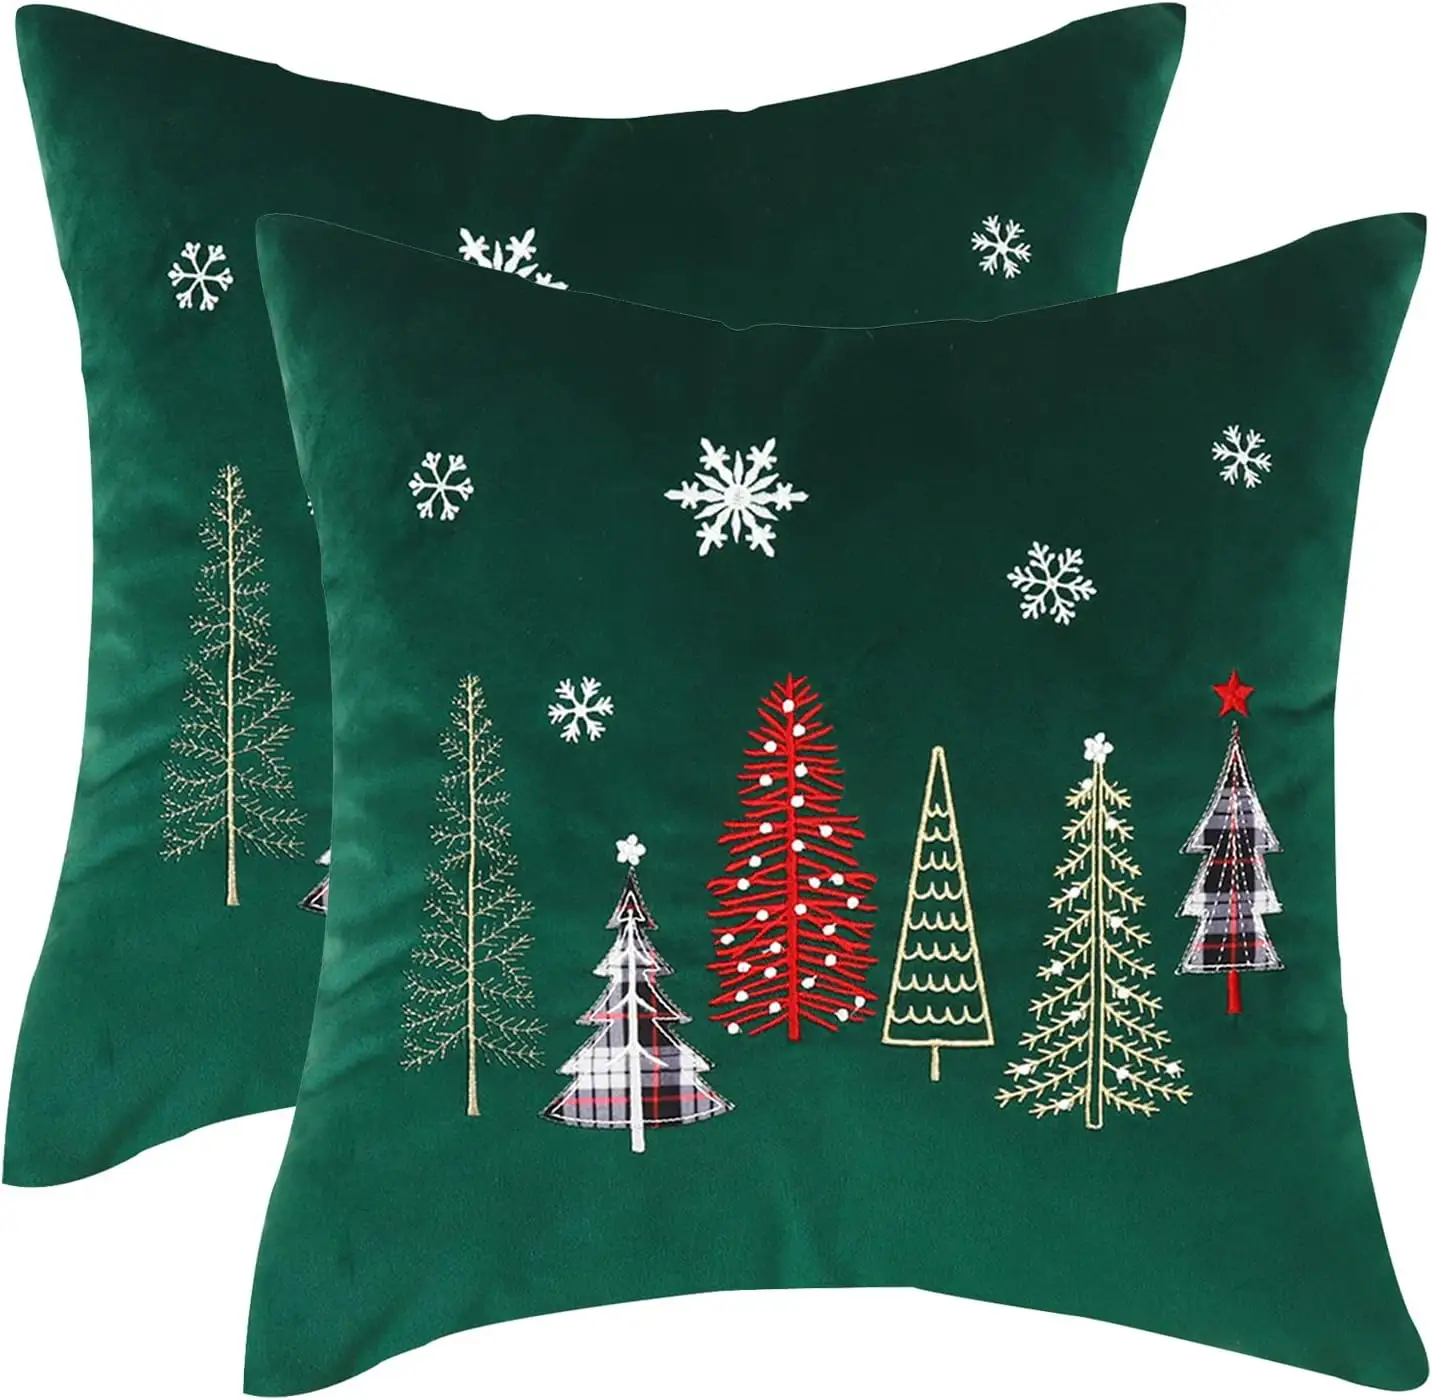 크리스마스 자수 던지기 베개 커버 18x18 인치-포레스트 그린 크리스마스 트리 디자인의 축제 벨벳 베갯잇